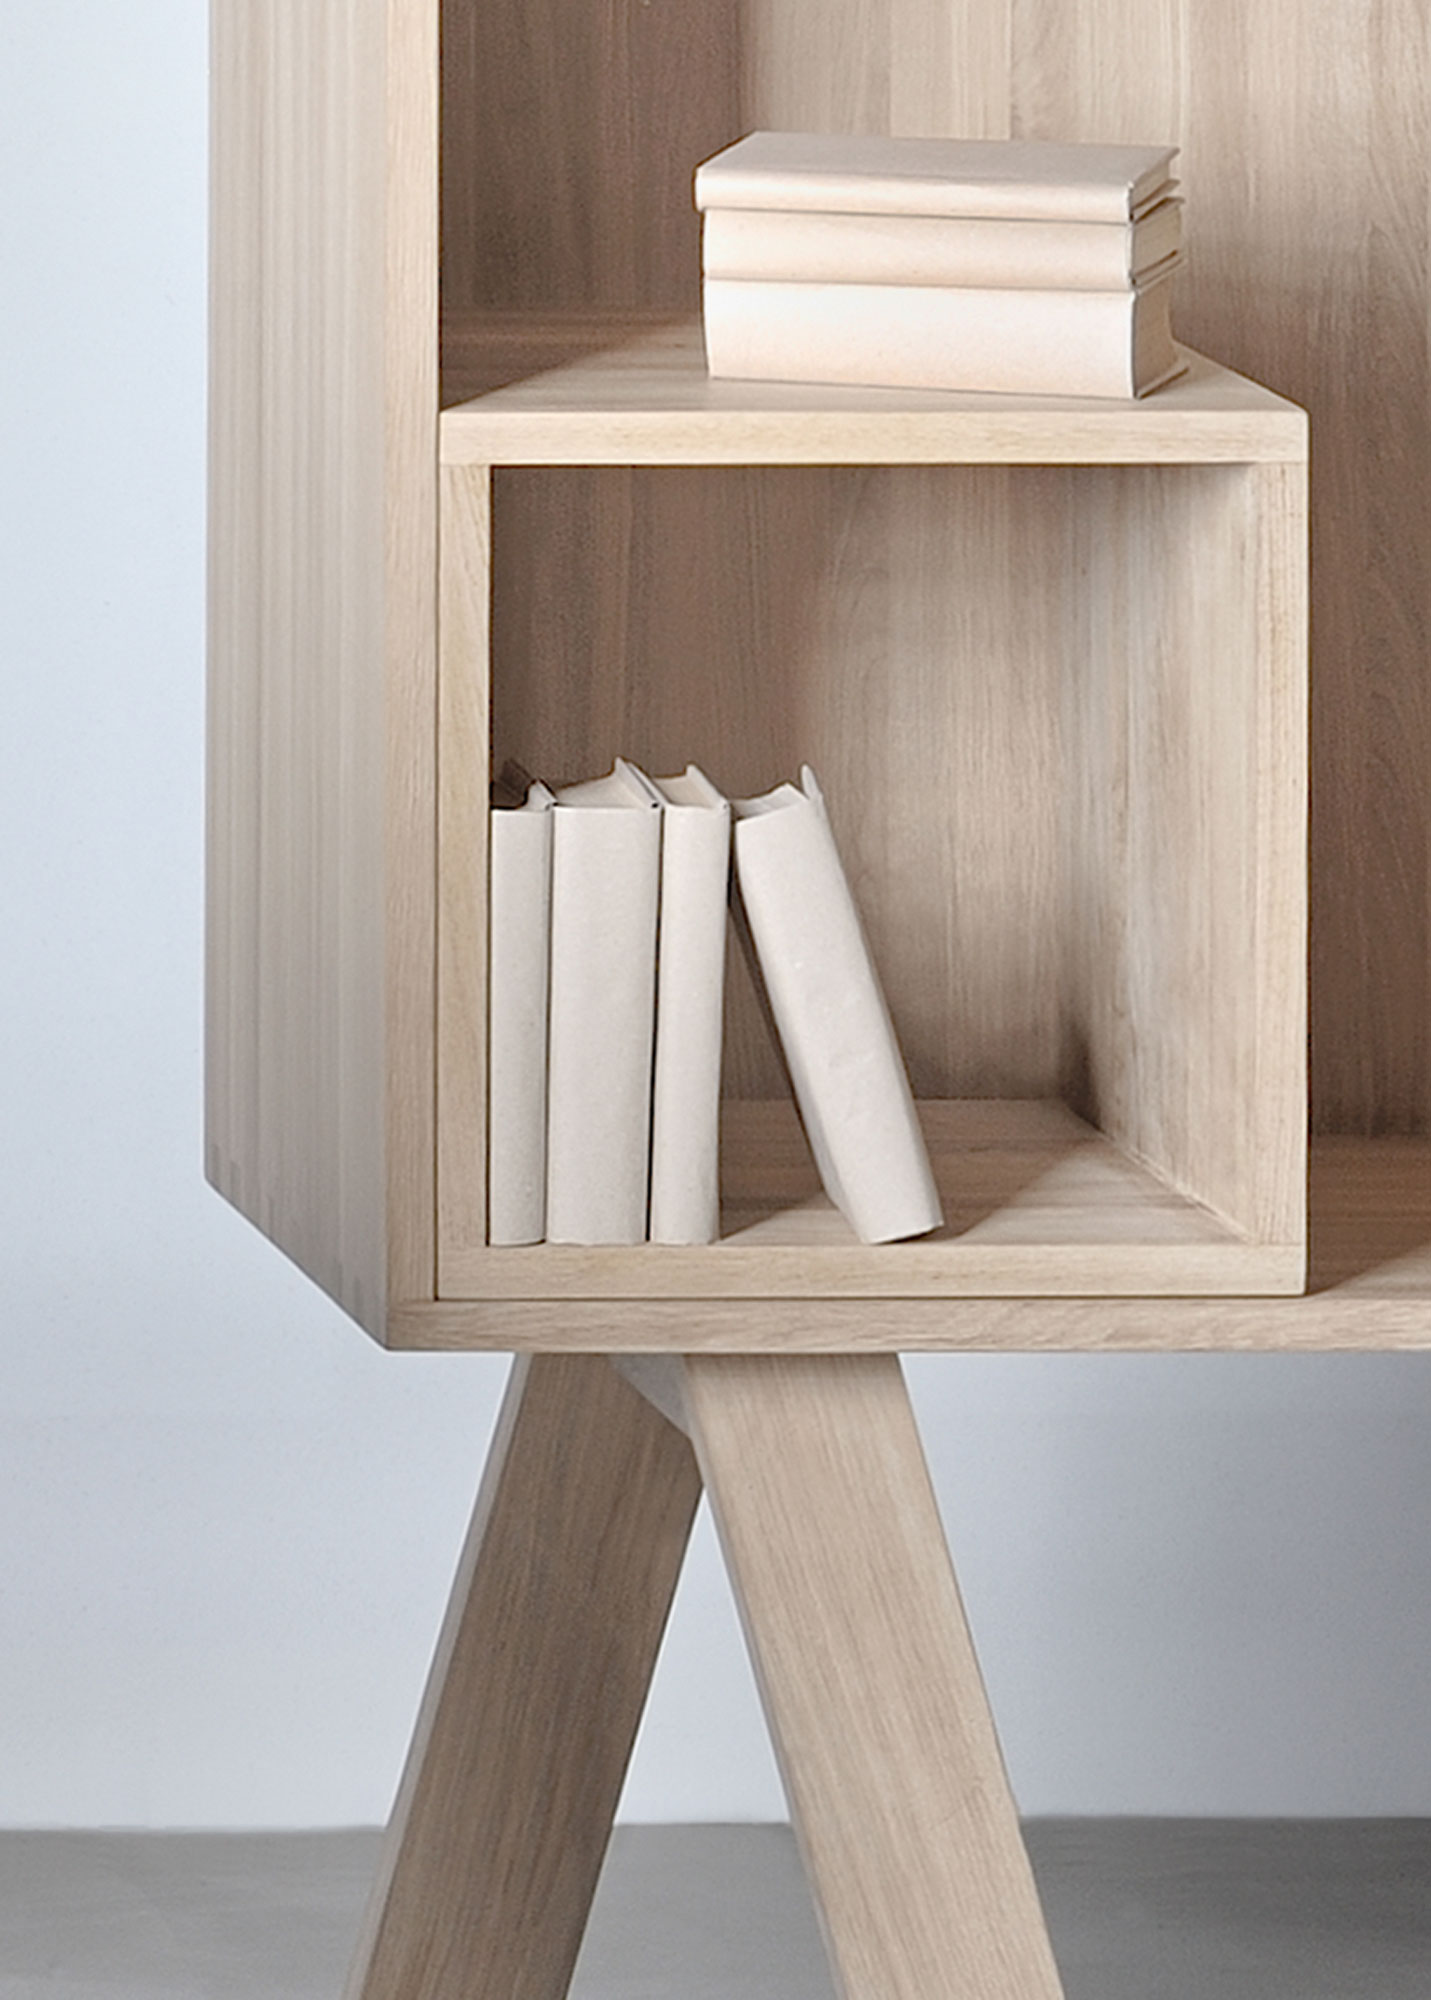 Solid Wood Shelf GO RW 4669cut custom made in solid wood by vitamin design